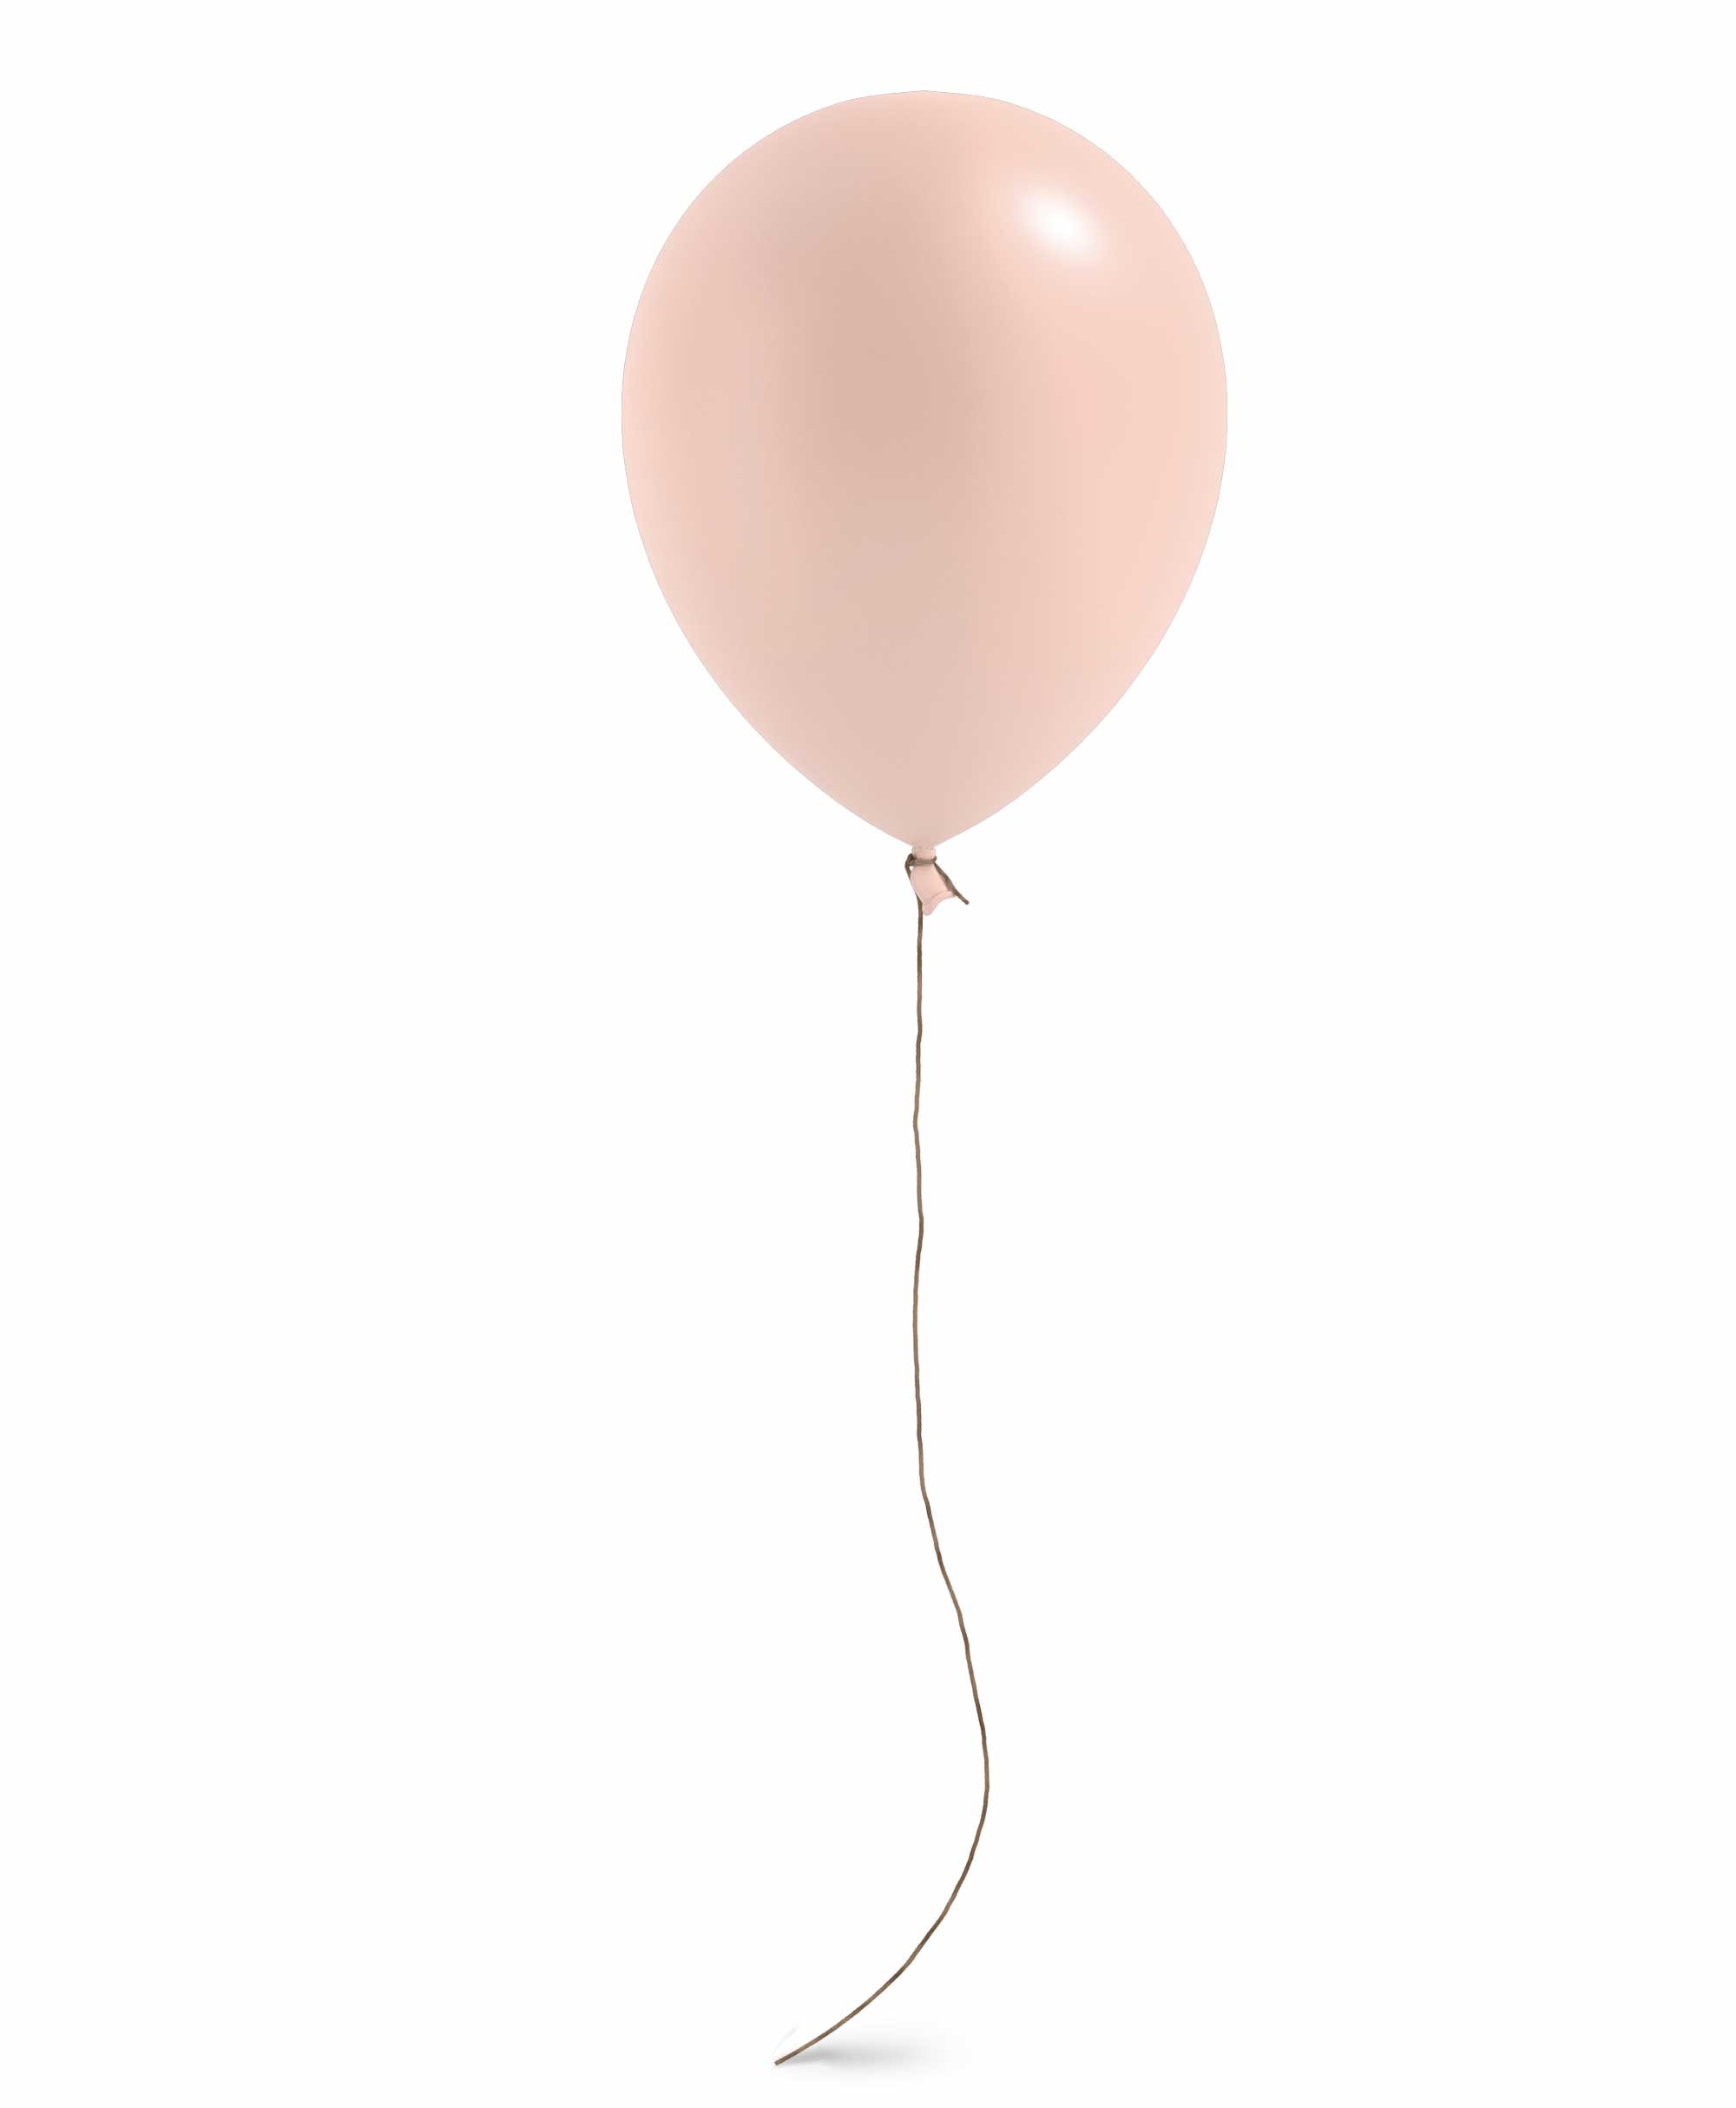 Peach balloon 11" - Raspberry theme